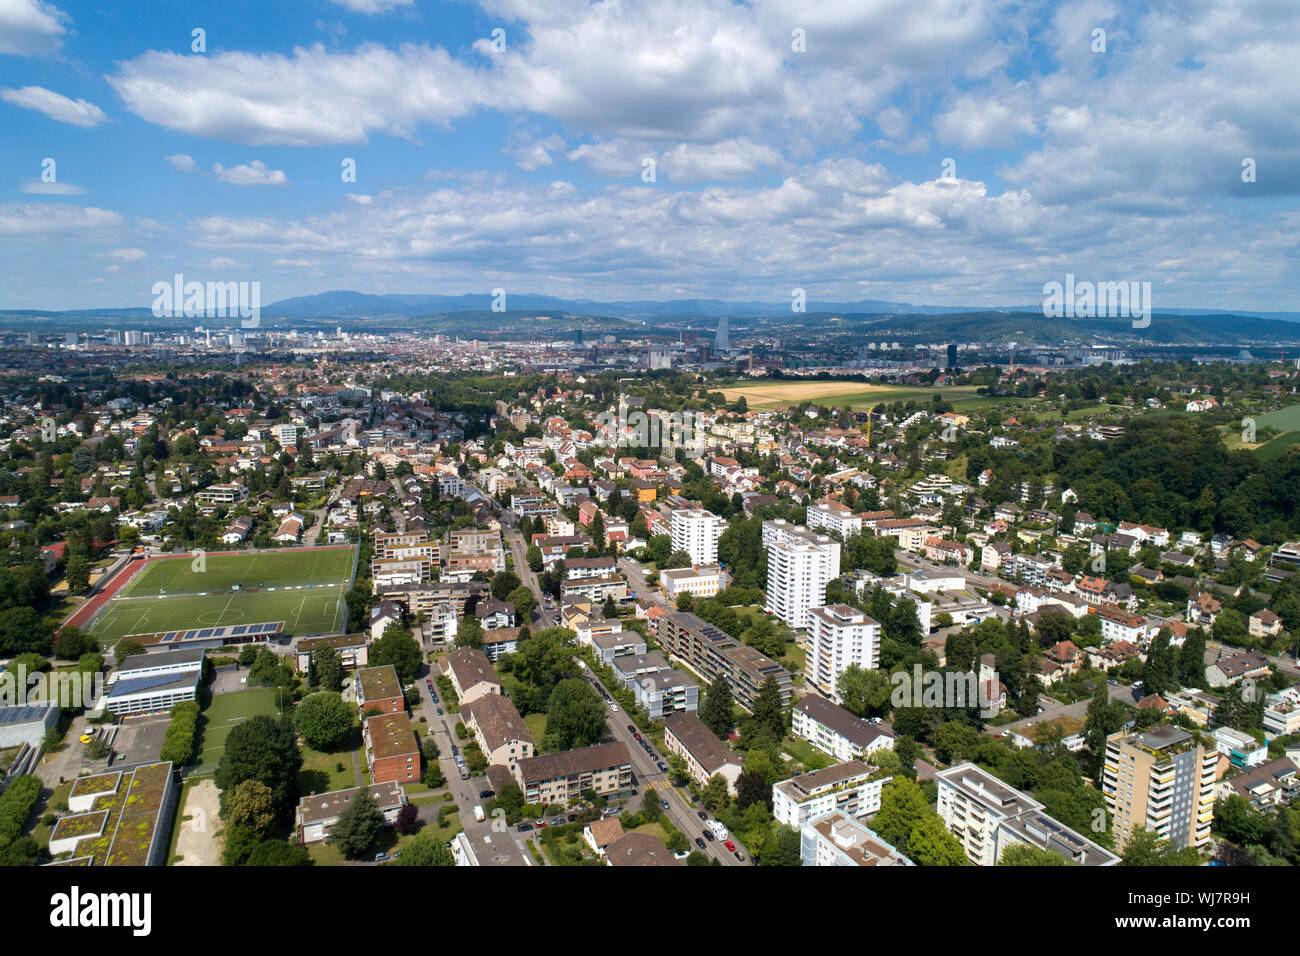 Binningen Switzerland aerial view Stock Photo